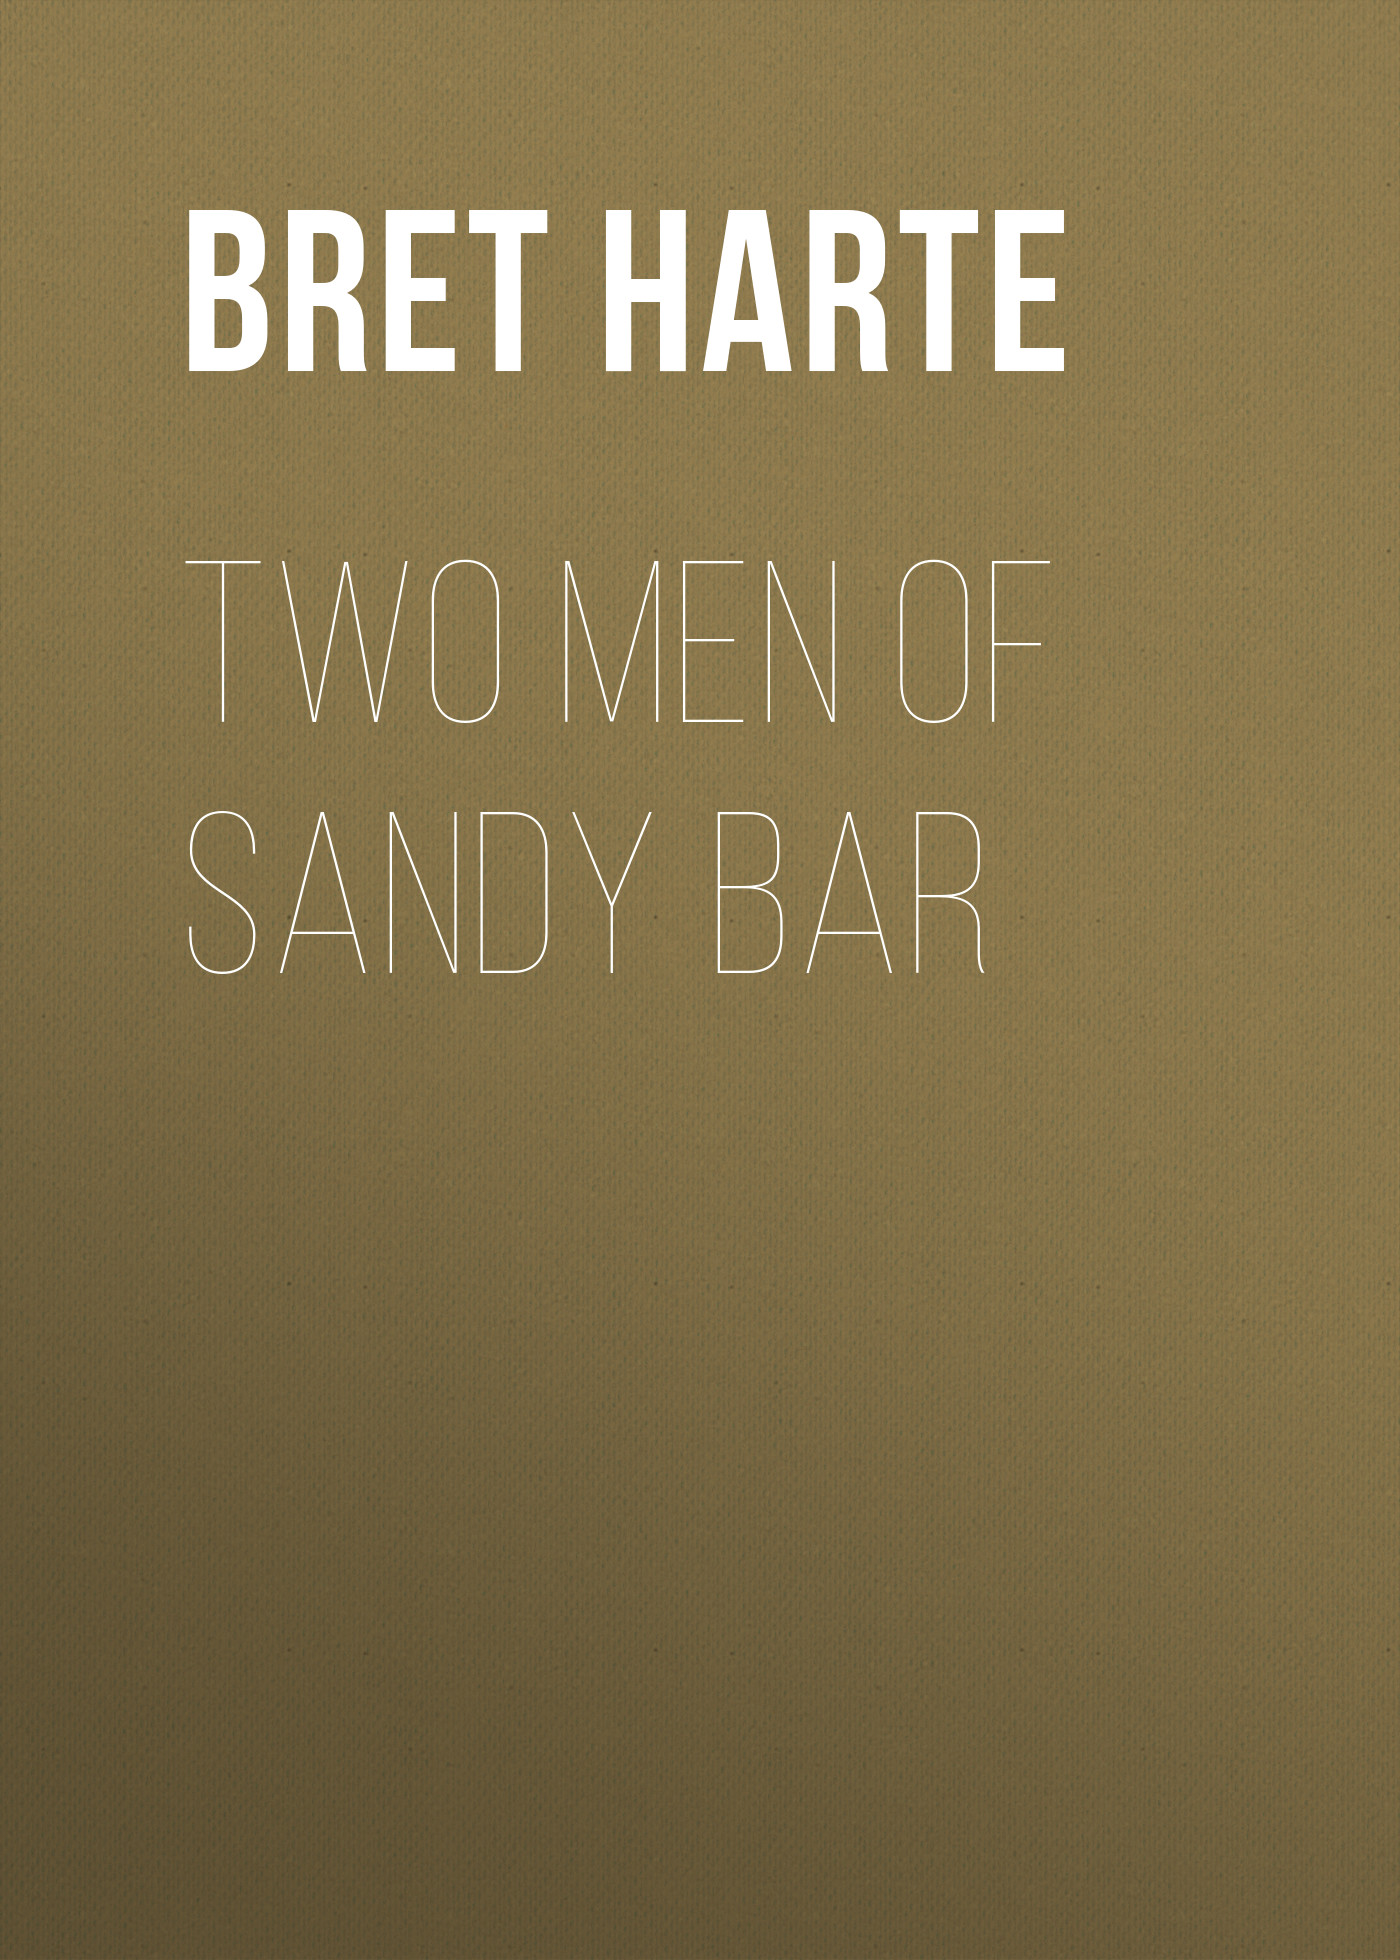 Книга Two Men of Sandy Bar из серии , созданная Bret Harte, может относится к жанру Зарубежная драматургия, Литература 19 века, Драматургия, Зарубежная старинная литература, Зарубежная классика. Стоимость электронной книги Two Men of Sandy Bar с идентификатором 36322284 составляет 0 руб.